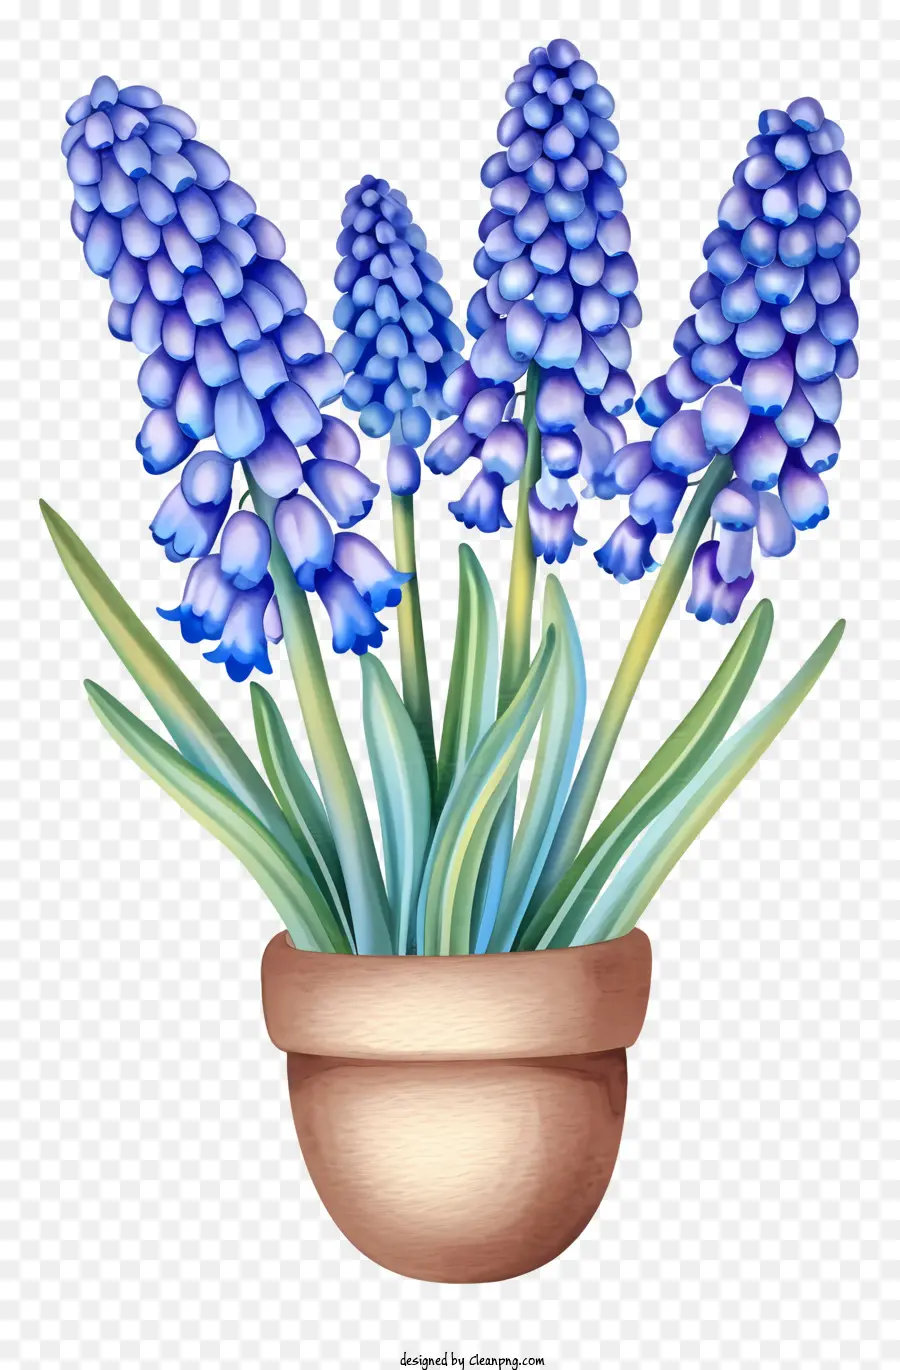 la disposizione dei fiori - Immagine realistica dei fiori di giacinto blu in vaso